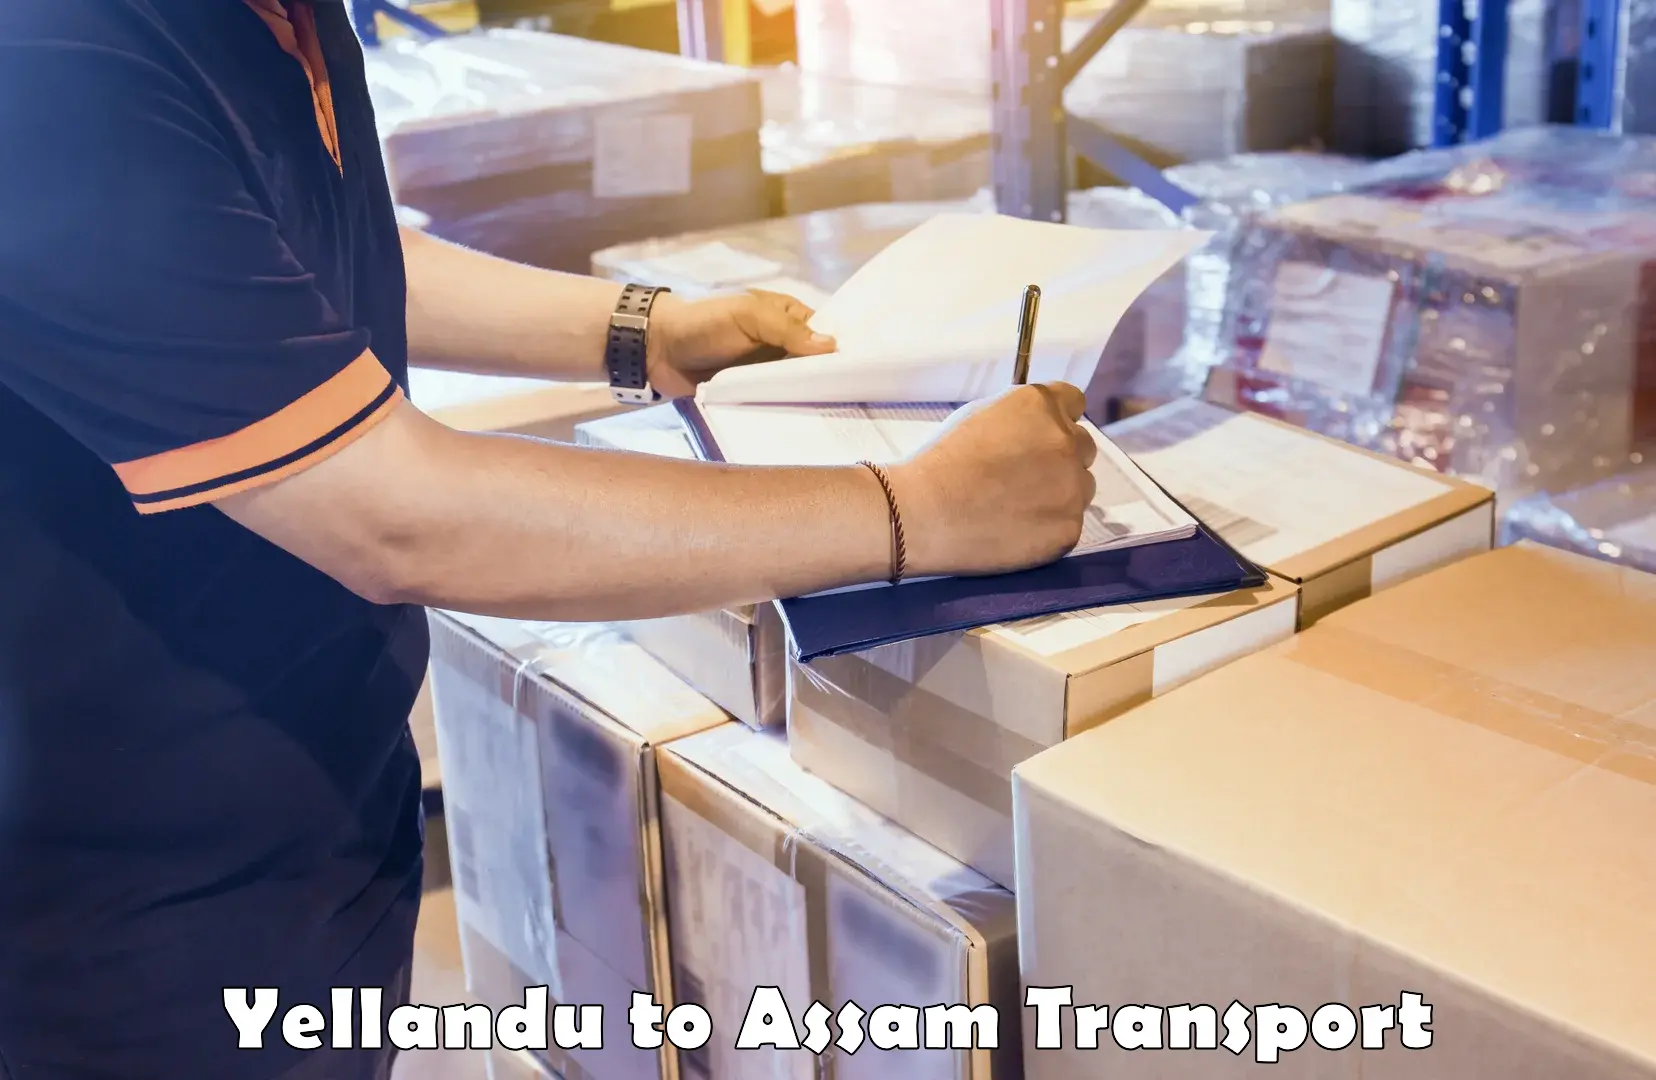 Lorry transport service Yellandu to Lala Assam